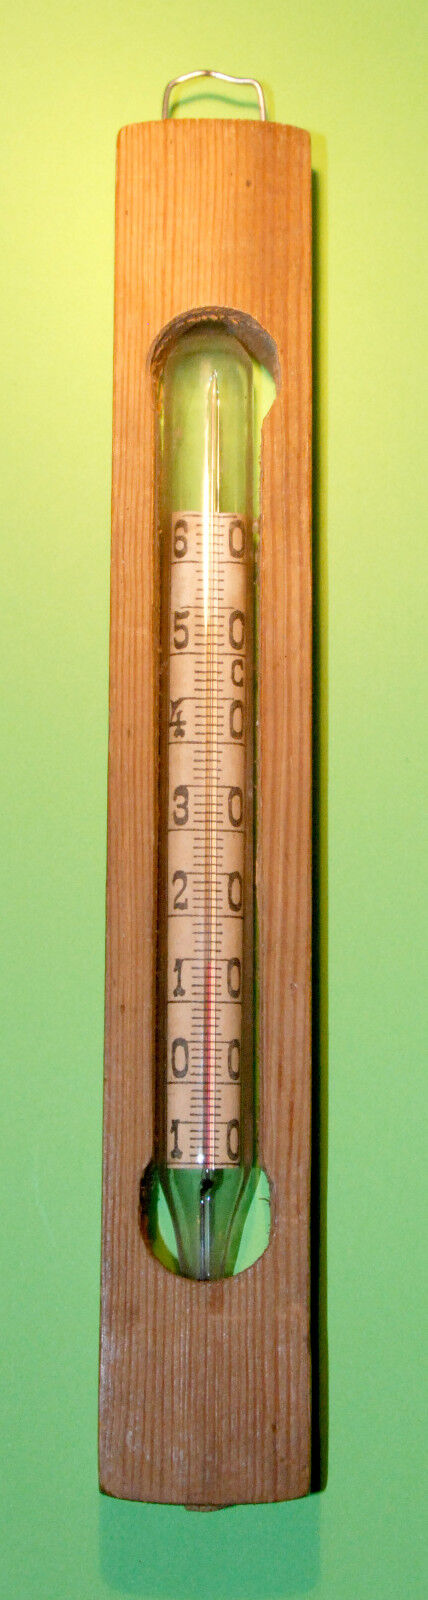  Thermometer 1941 Vintage Soviet WW2 Original Very Rare